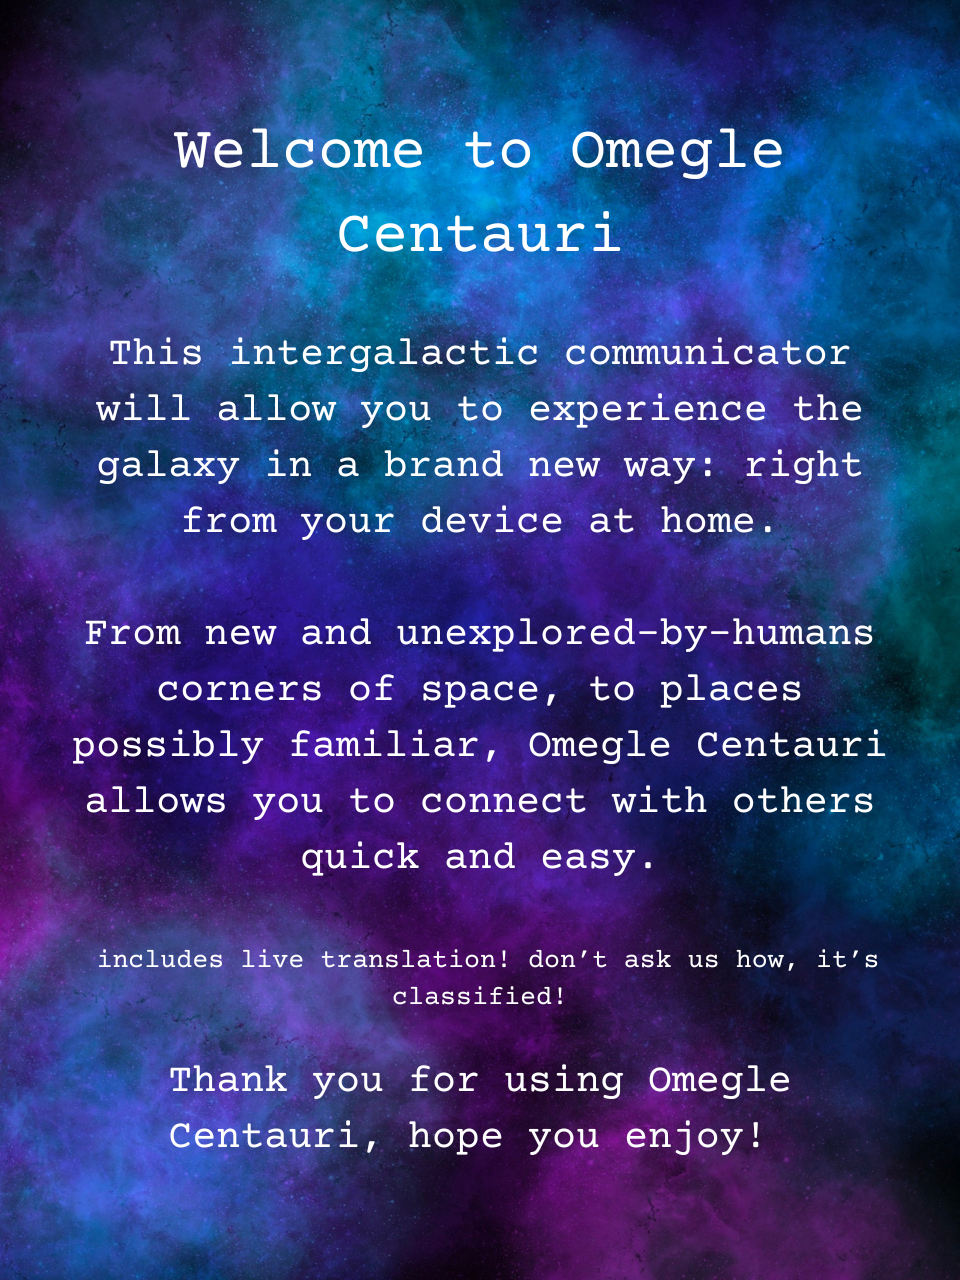 Omegle Centauri